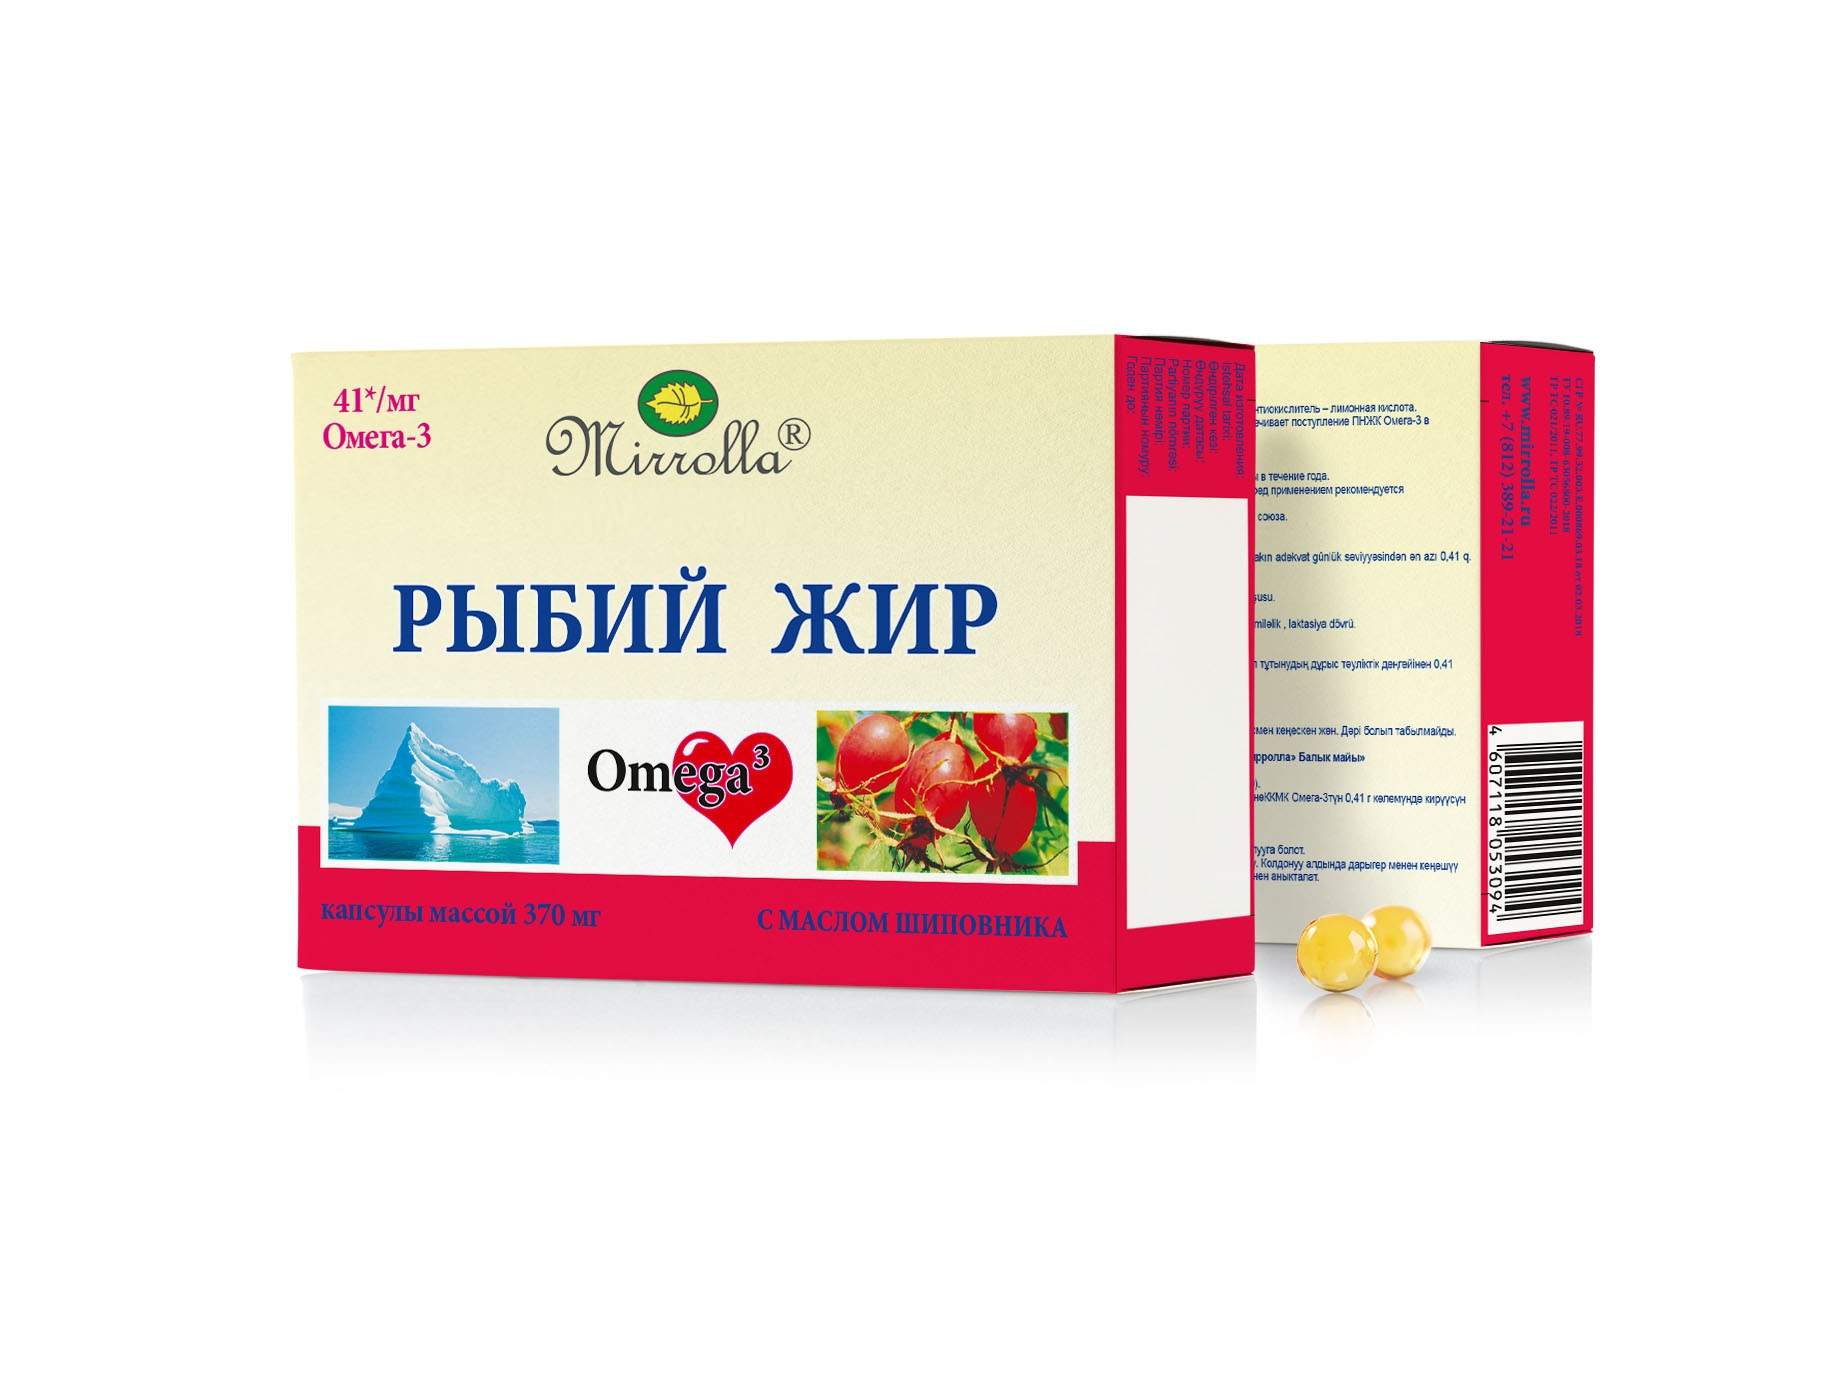 Рыбий жир пищевой с маслом шиповника серии Mirrolla 0,37 г 100 шт. - купить в интернет-магазинах, цены на Мегамаркет | жирные кислоты